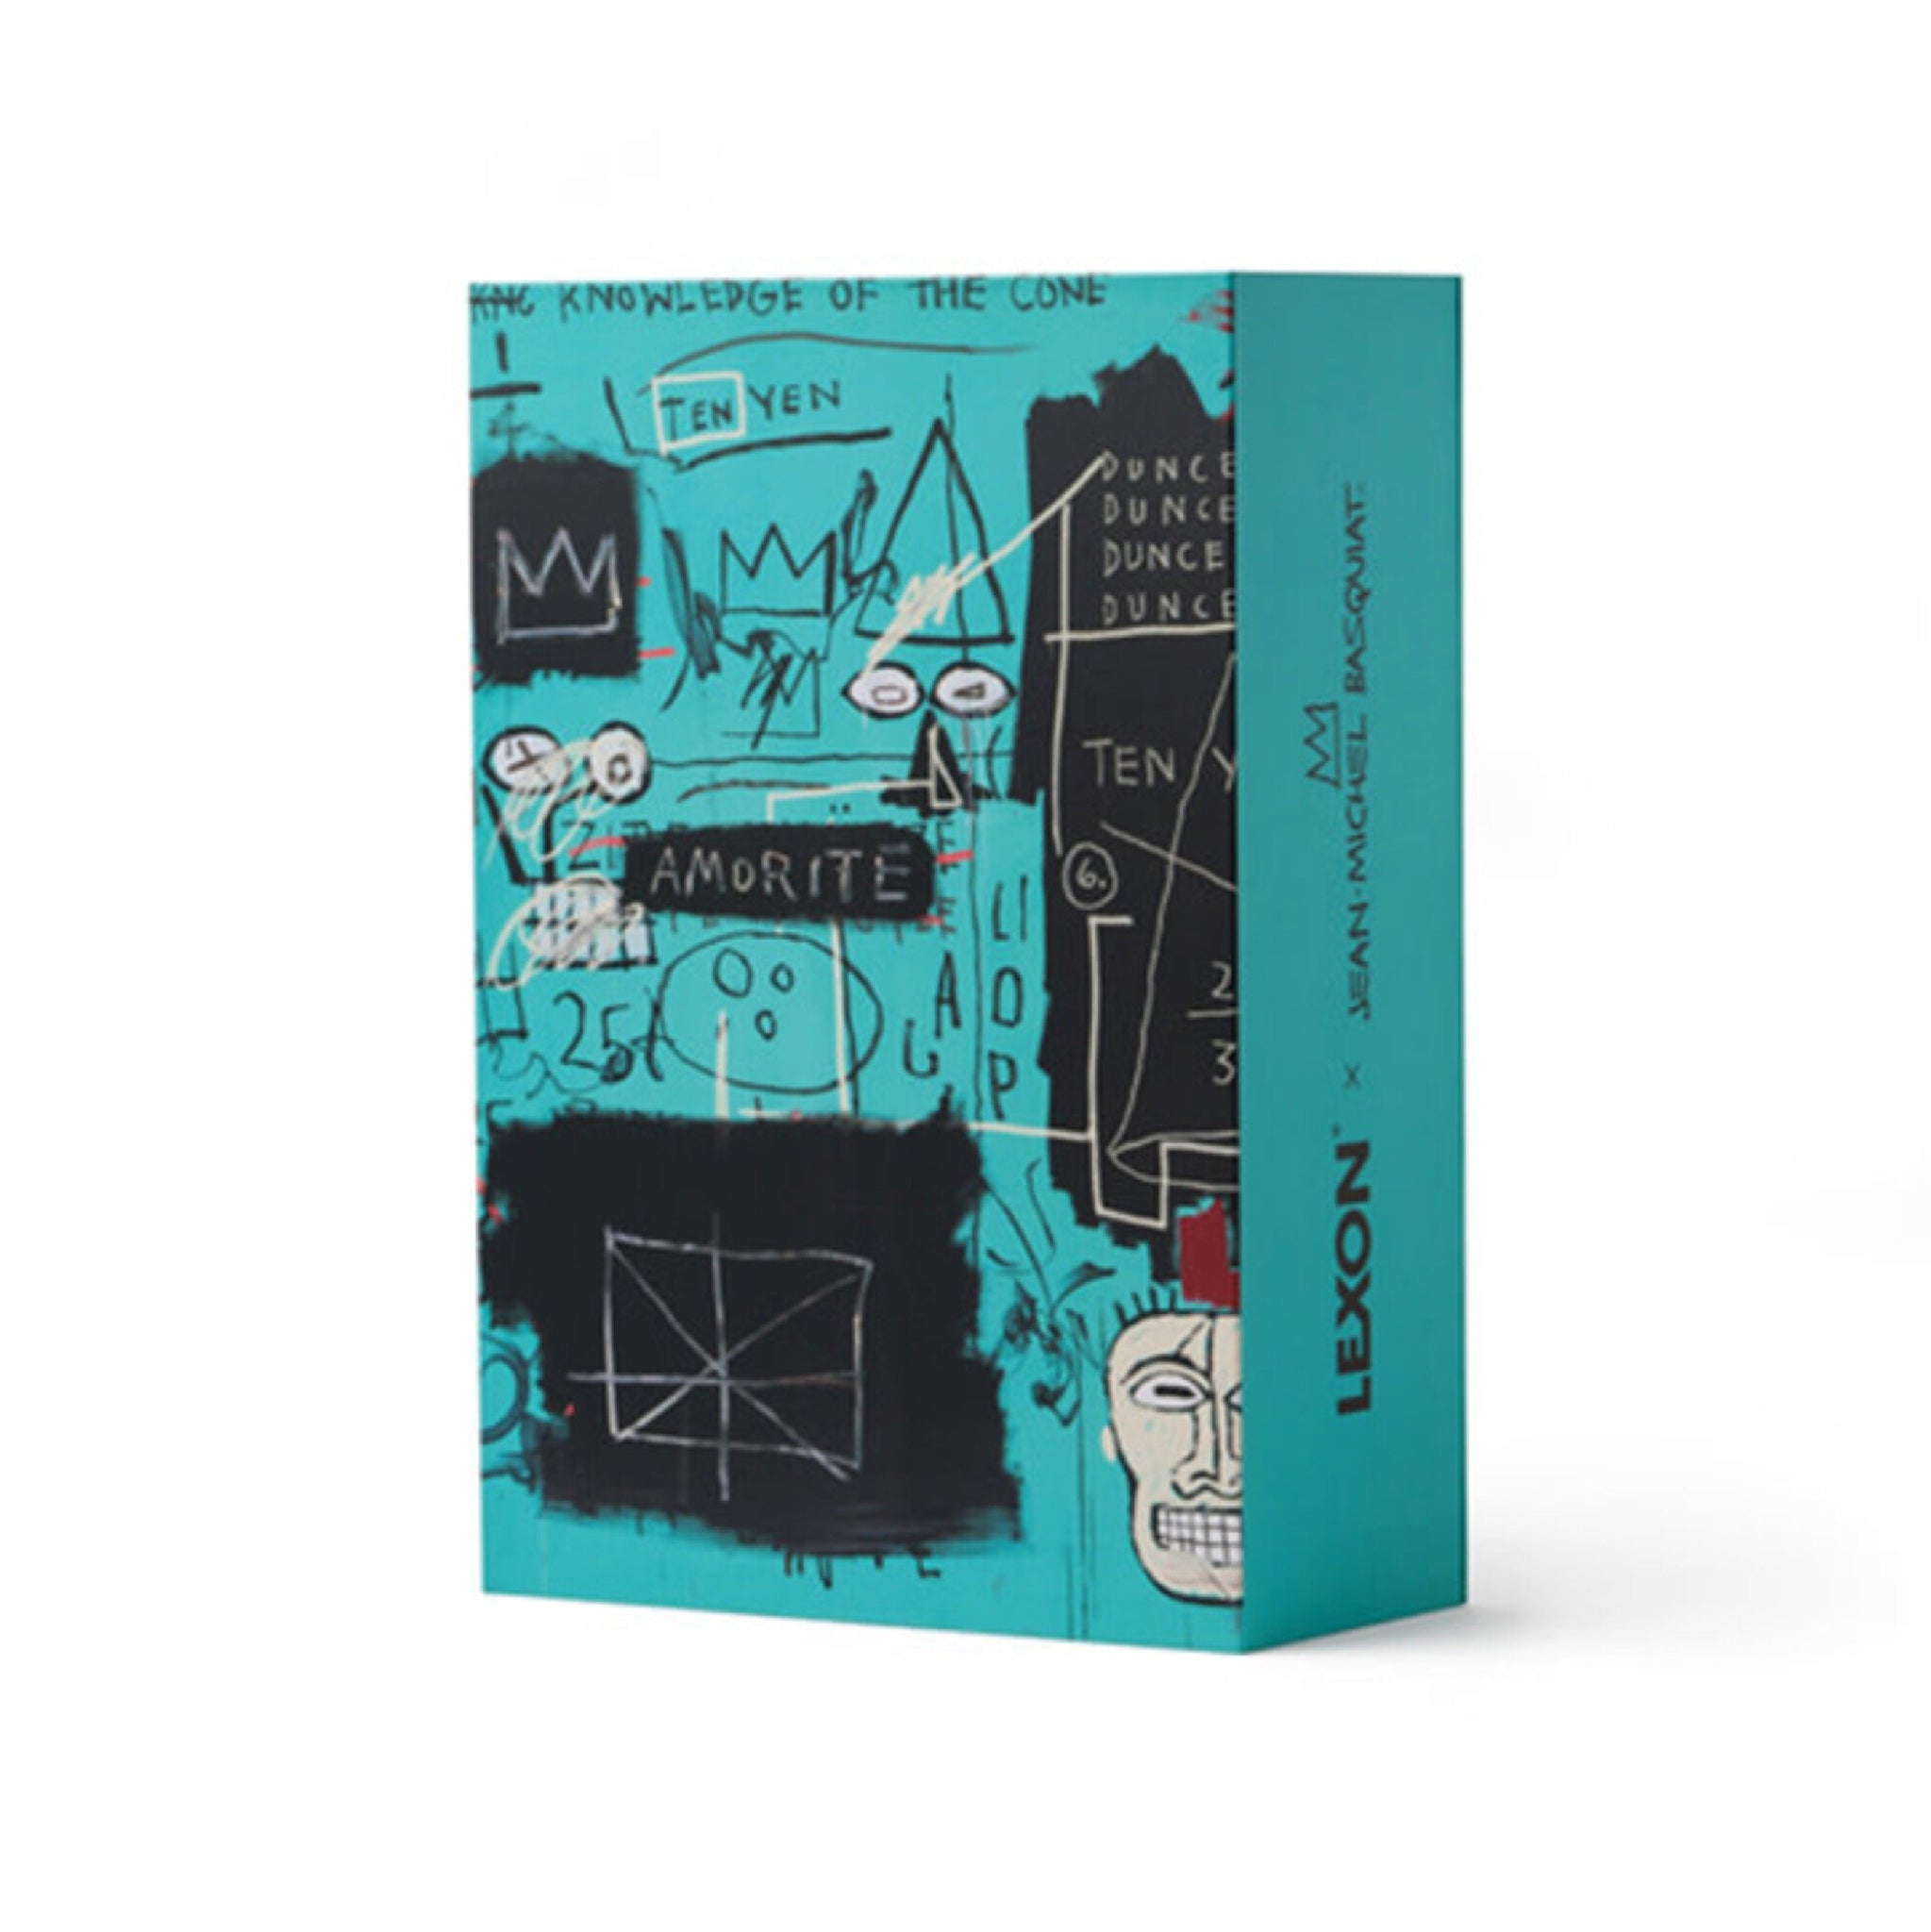 Gift Set - Lexon x Jean-Michel Basquiat - Equals Pi